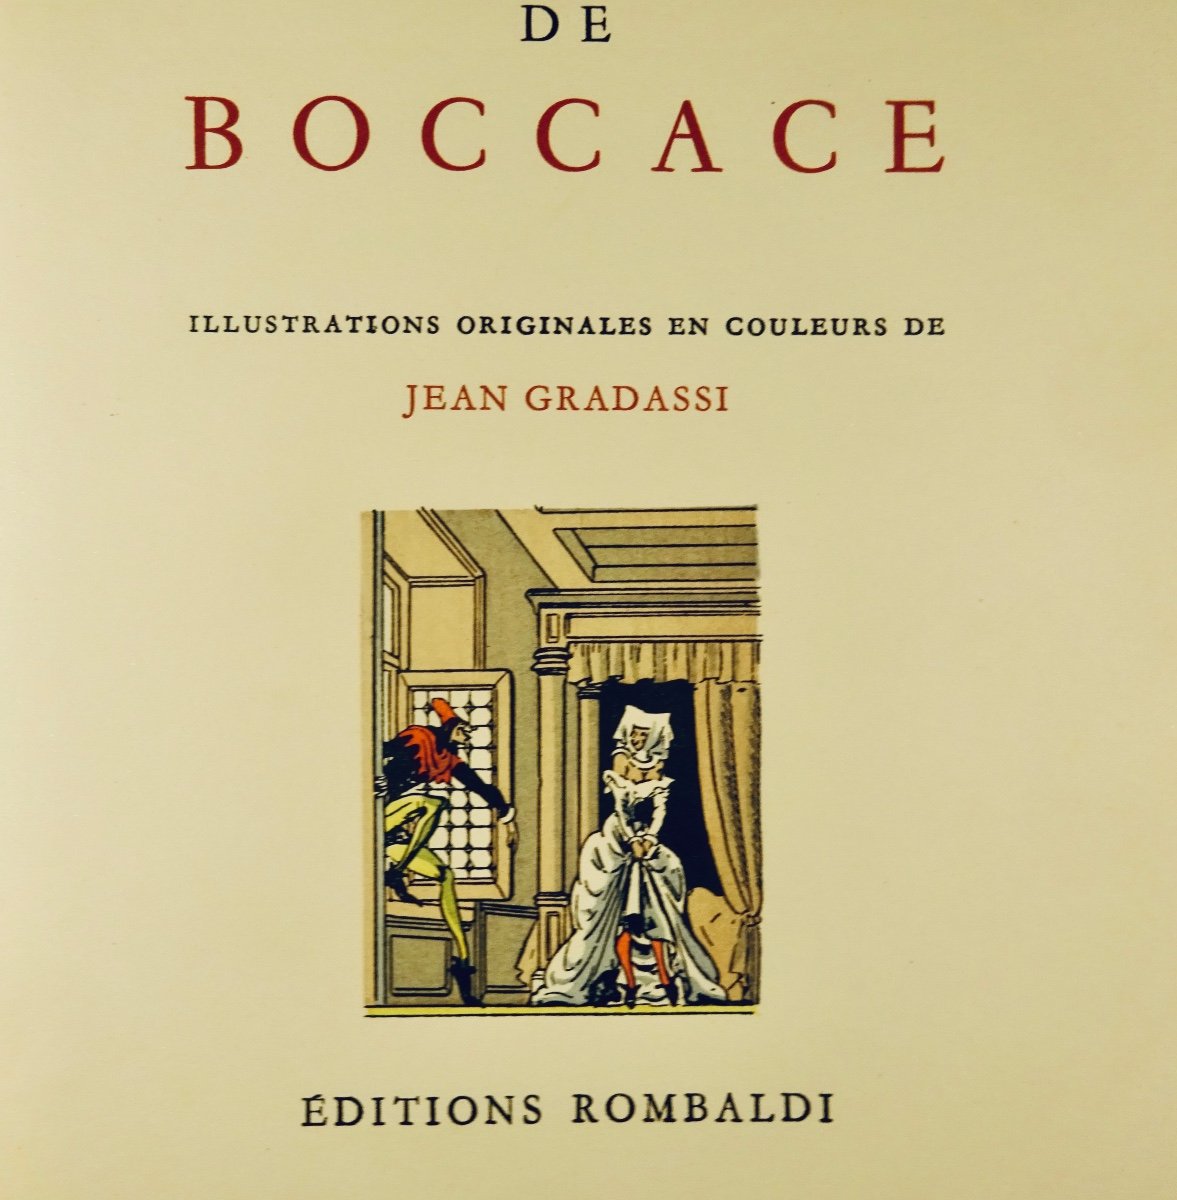 BOCCACE - Contes de Boccace. Paris, Éditions Rombaldi, 1951, illustré par GRADASSI.